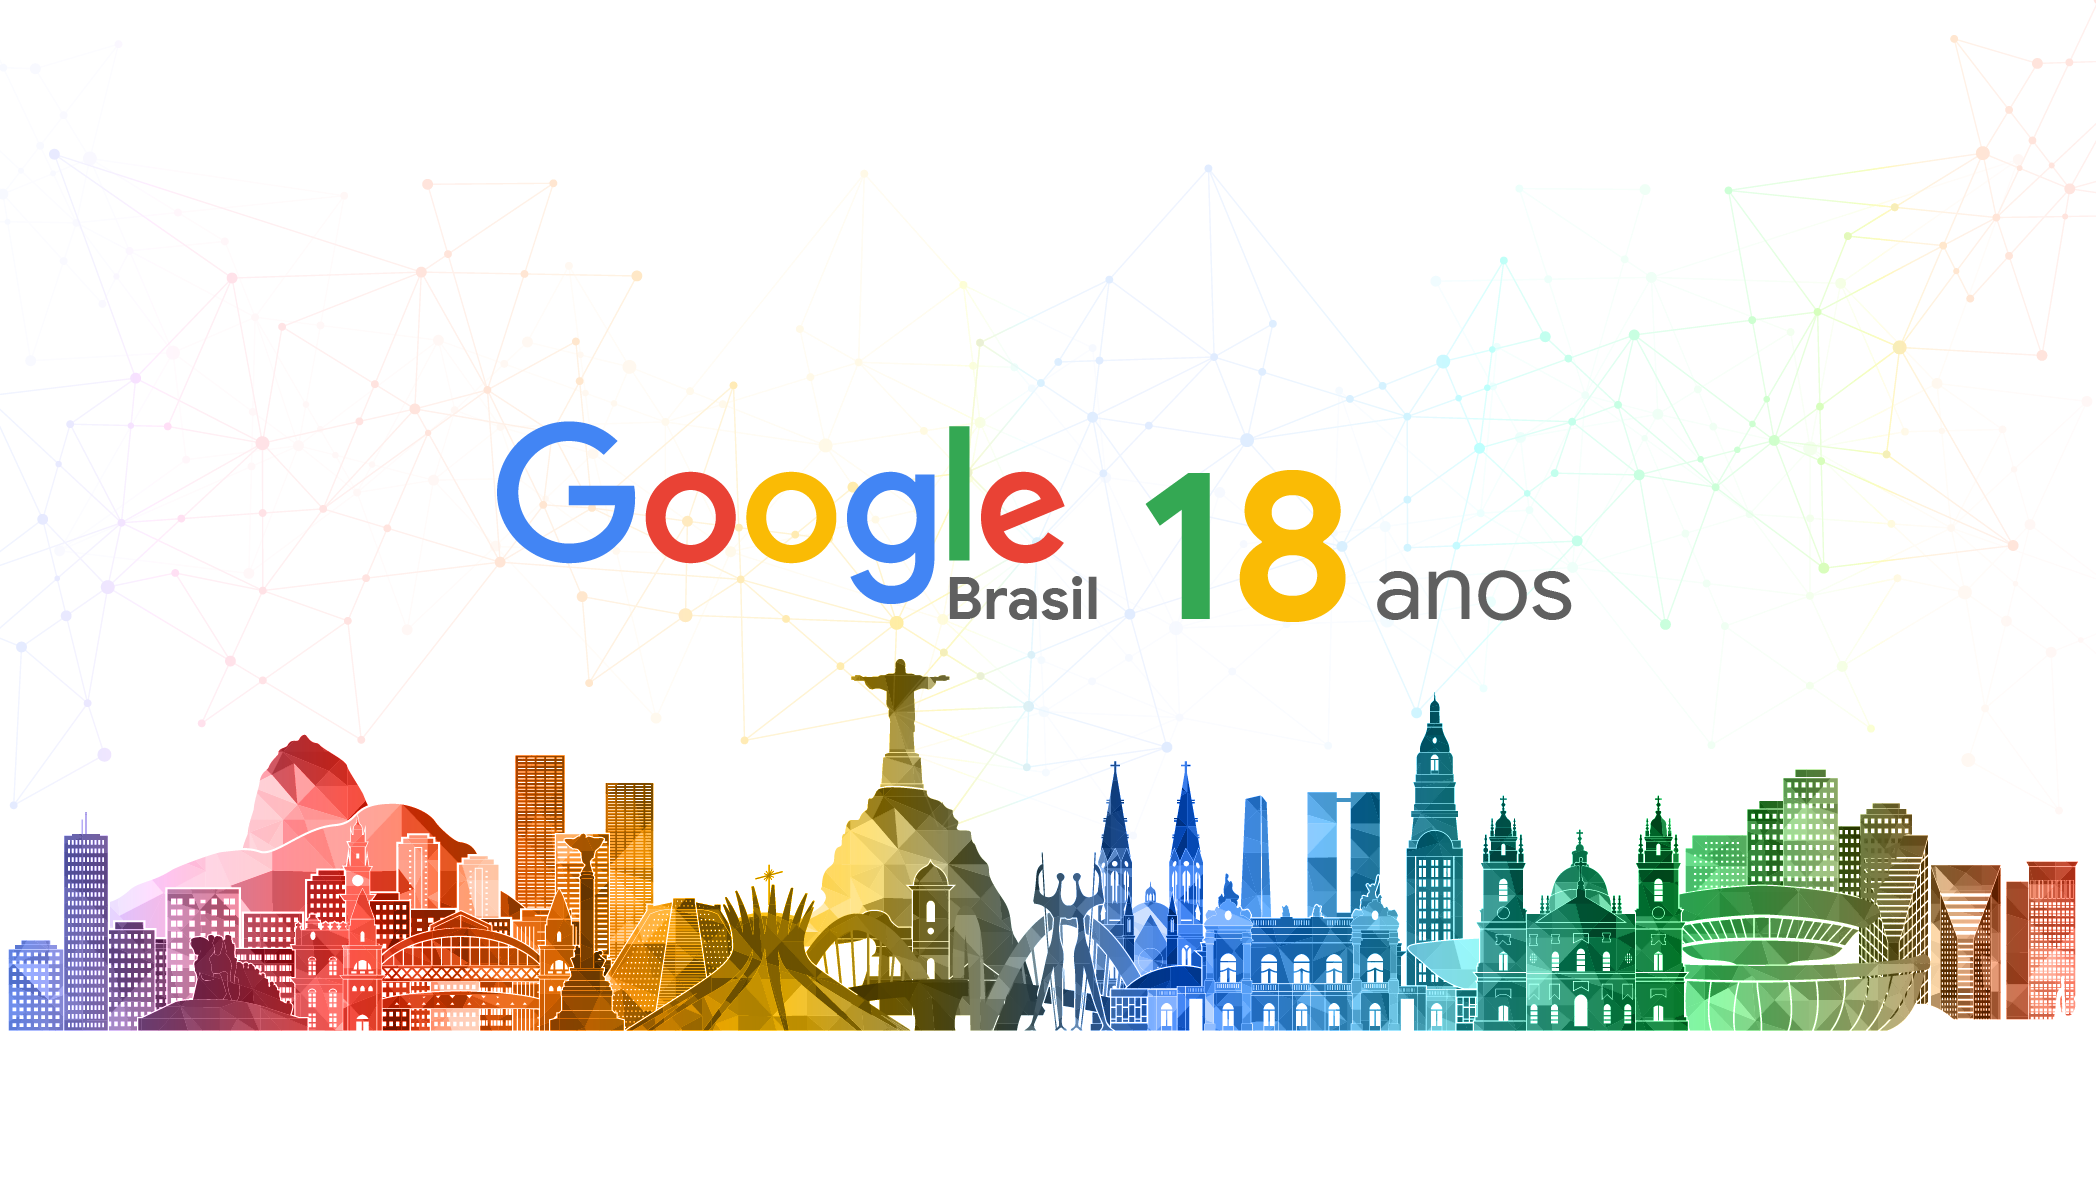 Google celebra 25 anos com Doodle - Tecnologia - Estado de Minas